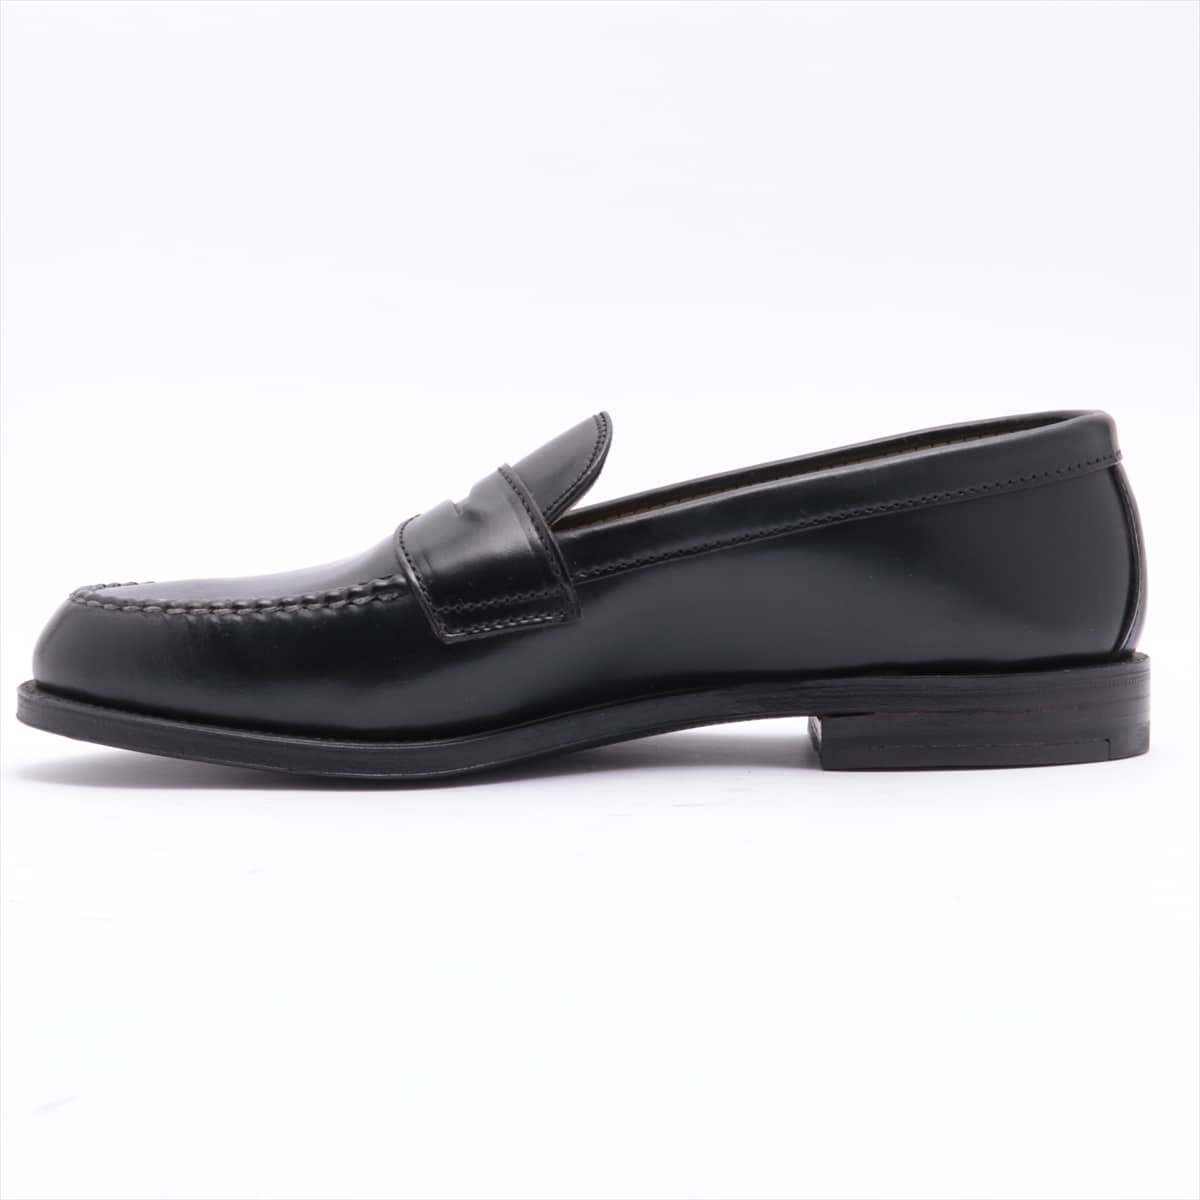 Alden Leather Loafer 9 Men's Black